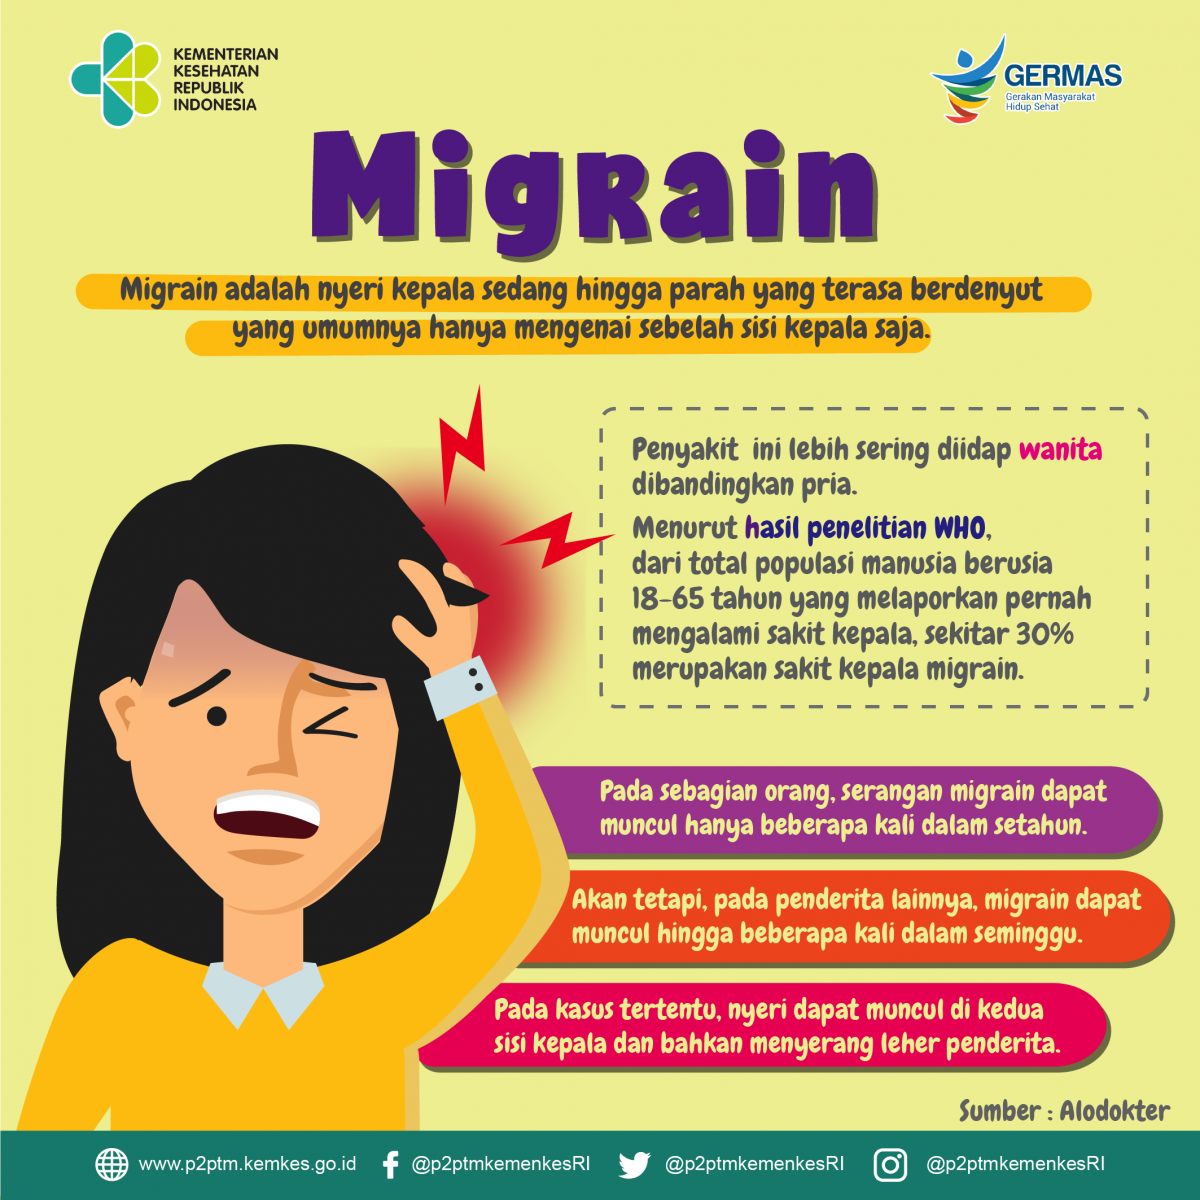 Adakah Sobat Sehat yang pernah mengalami migrain?